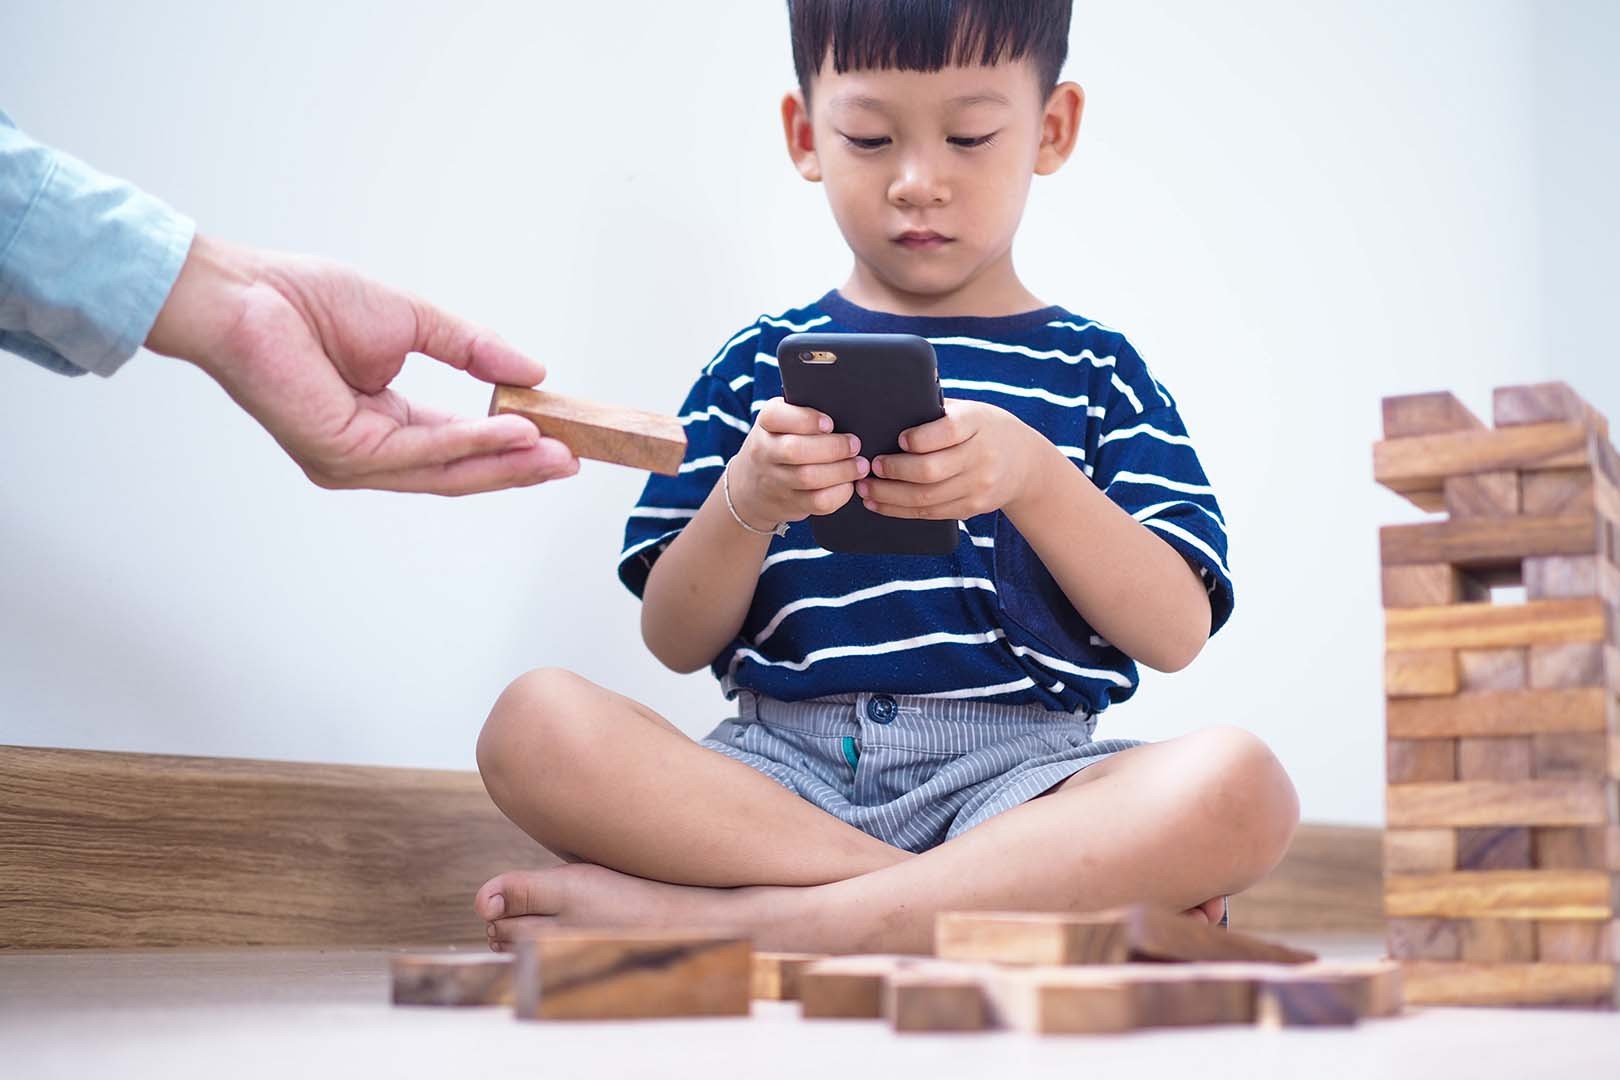 Adakah Dampak Bermain Video Game Bagi Anak ADHD?